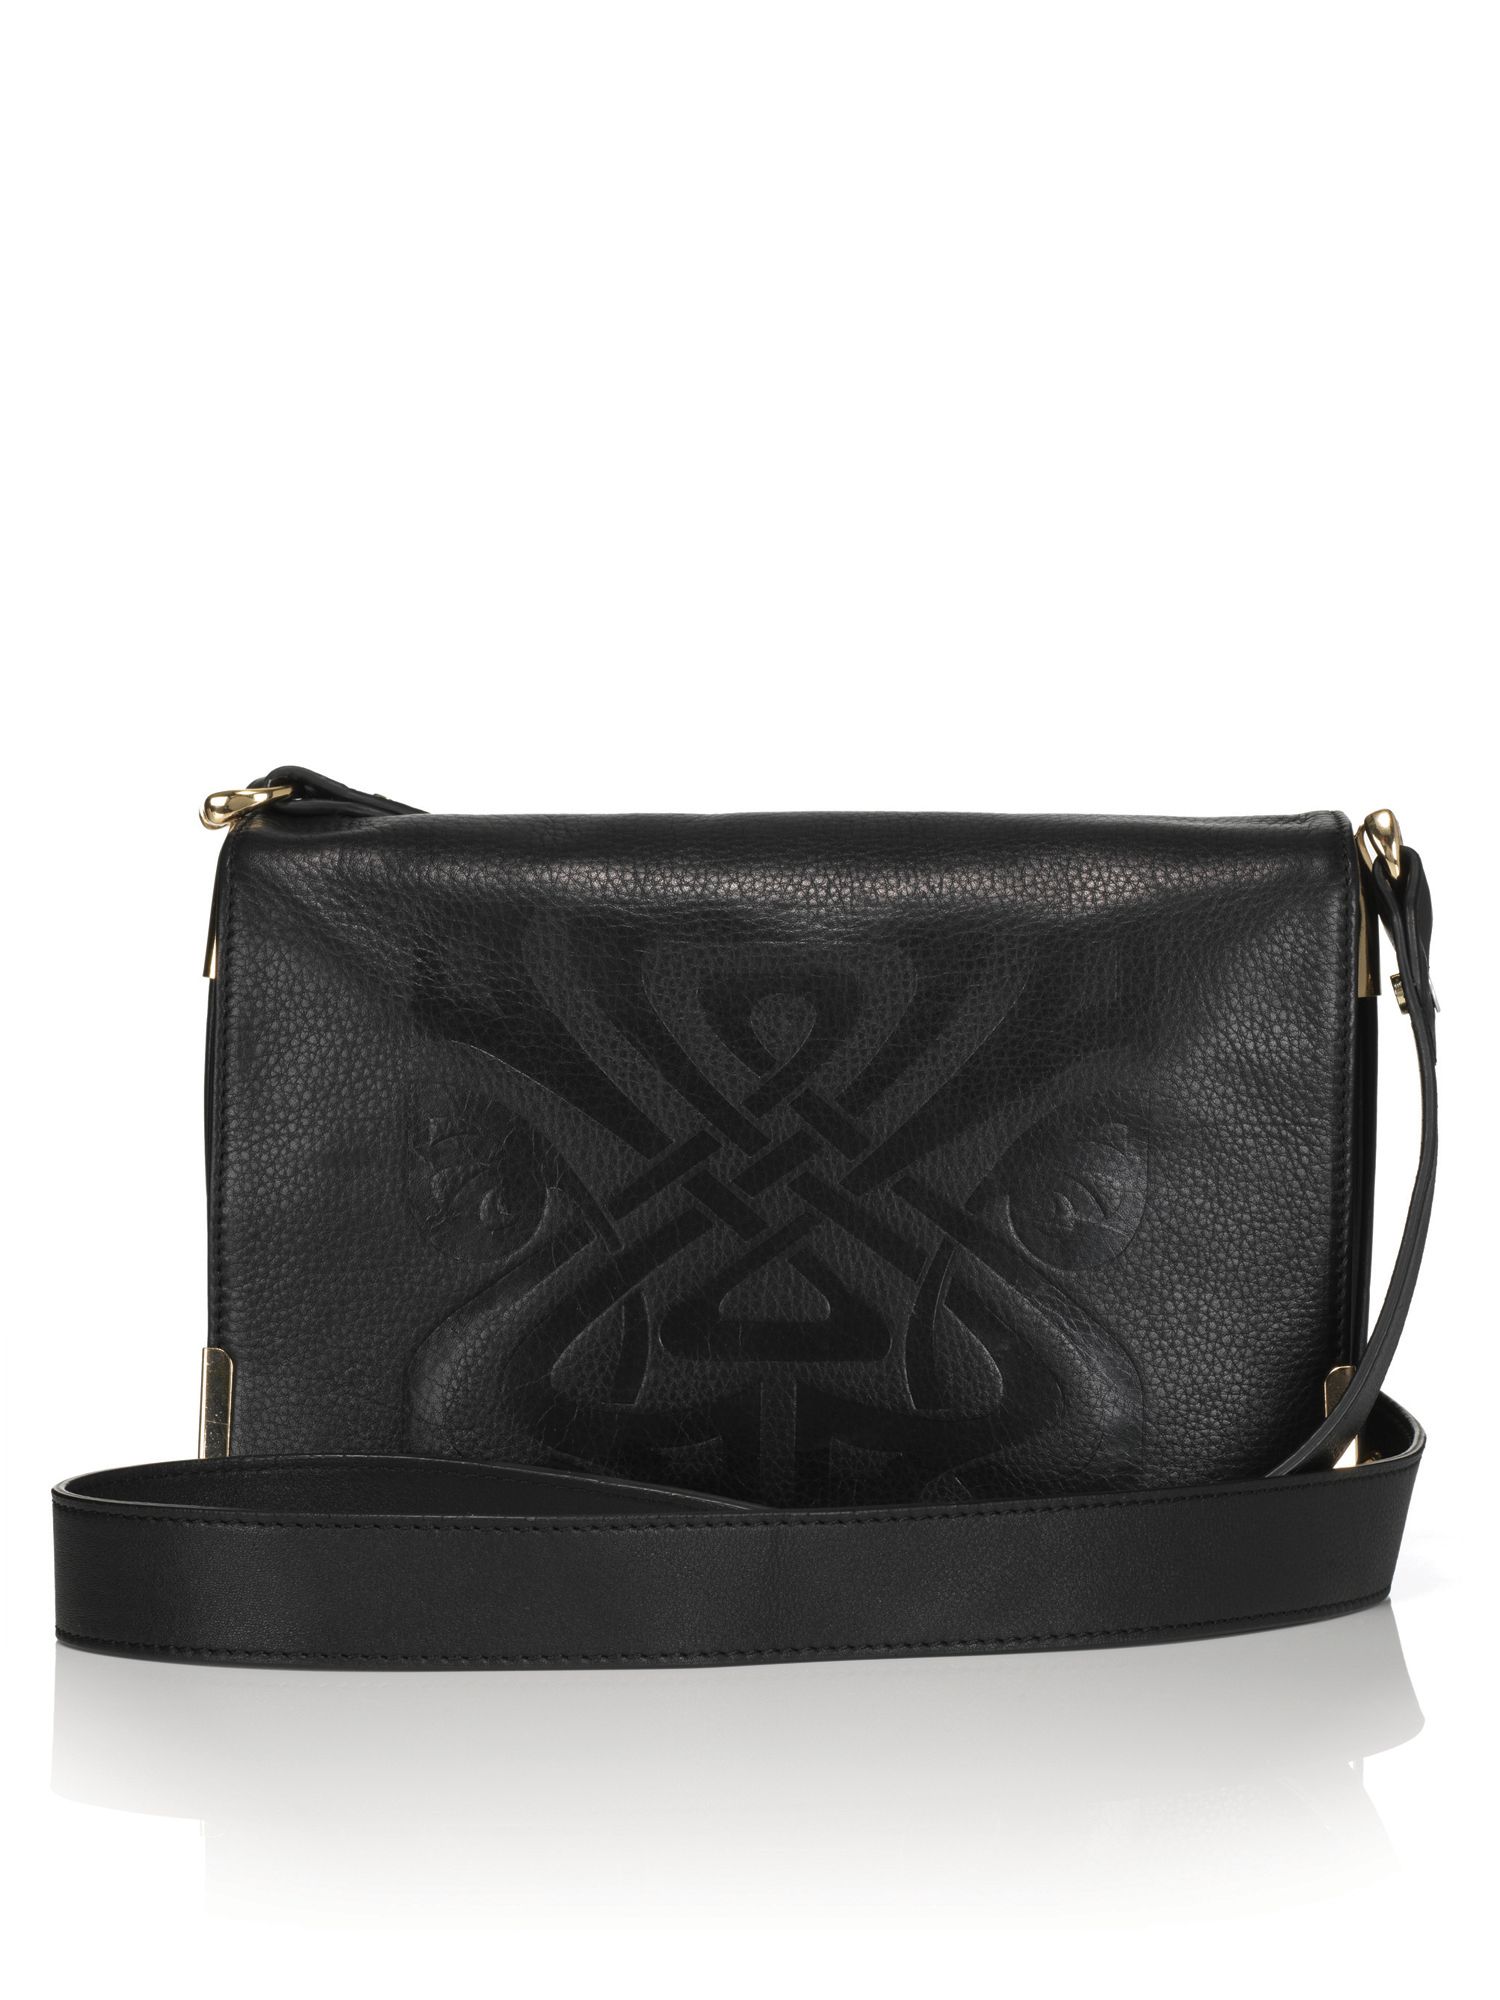 Biba Gretal Embossed Leather Logo Shoulder Bag in Black | Lyst